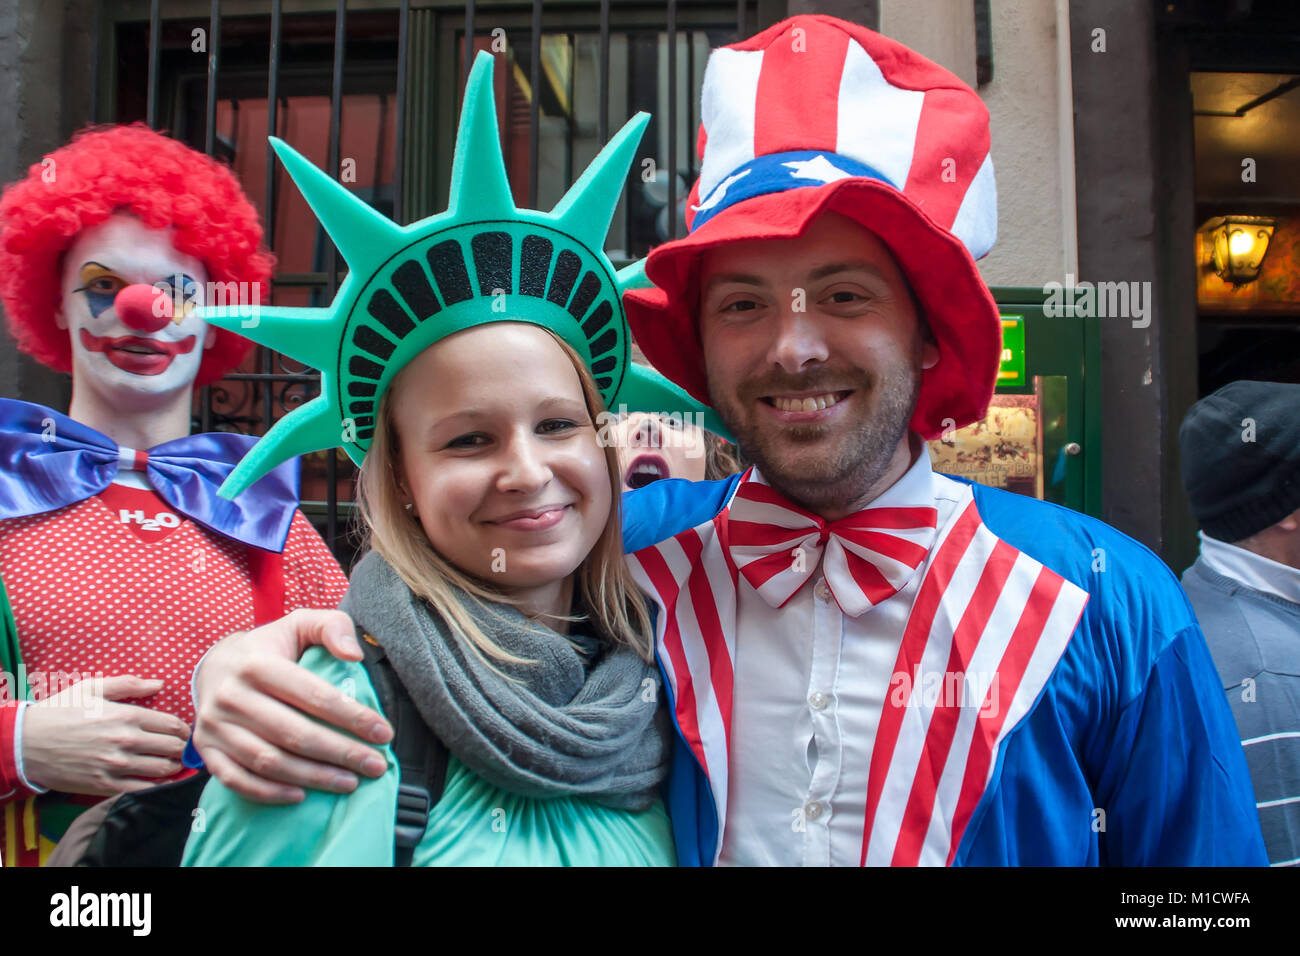 Colonia, Alemania - 14 de marzo de 2014: Ese es el carnaval de calle, una hermosa joven pareja se disfraza como Mister América y Miss Liberty Foto de stock